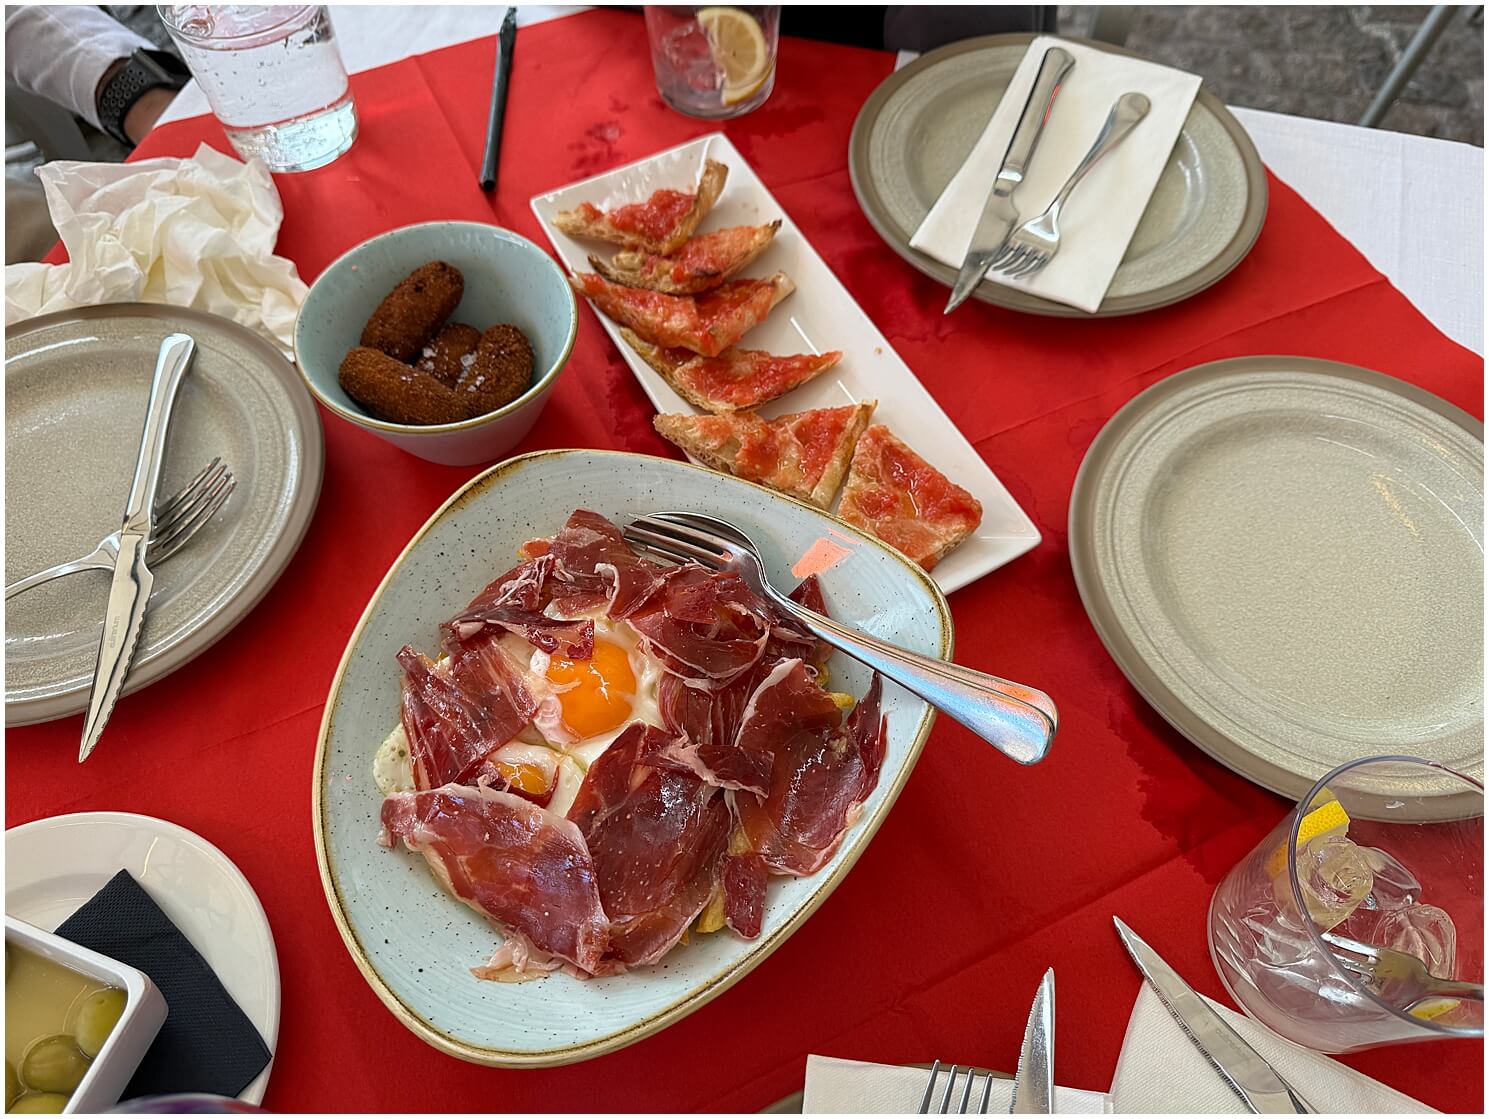 Typical Breakfast in Spain